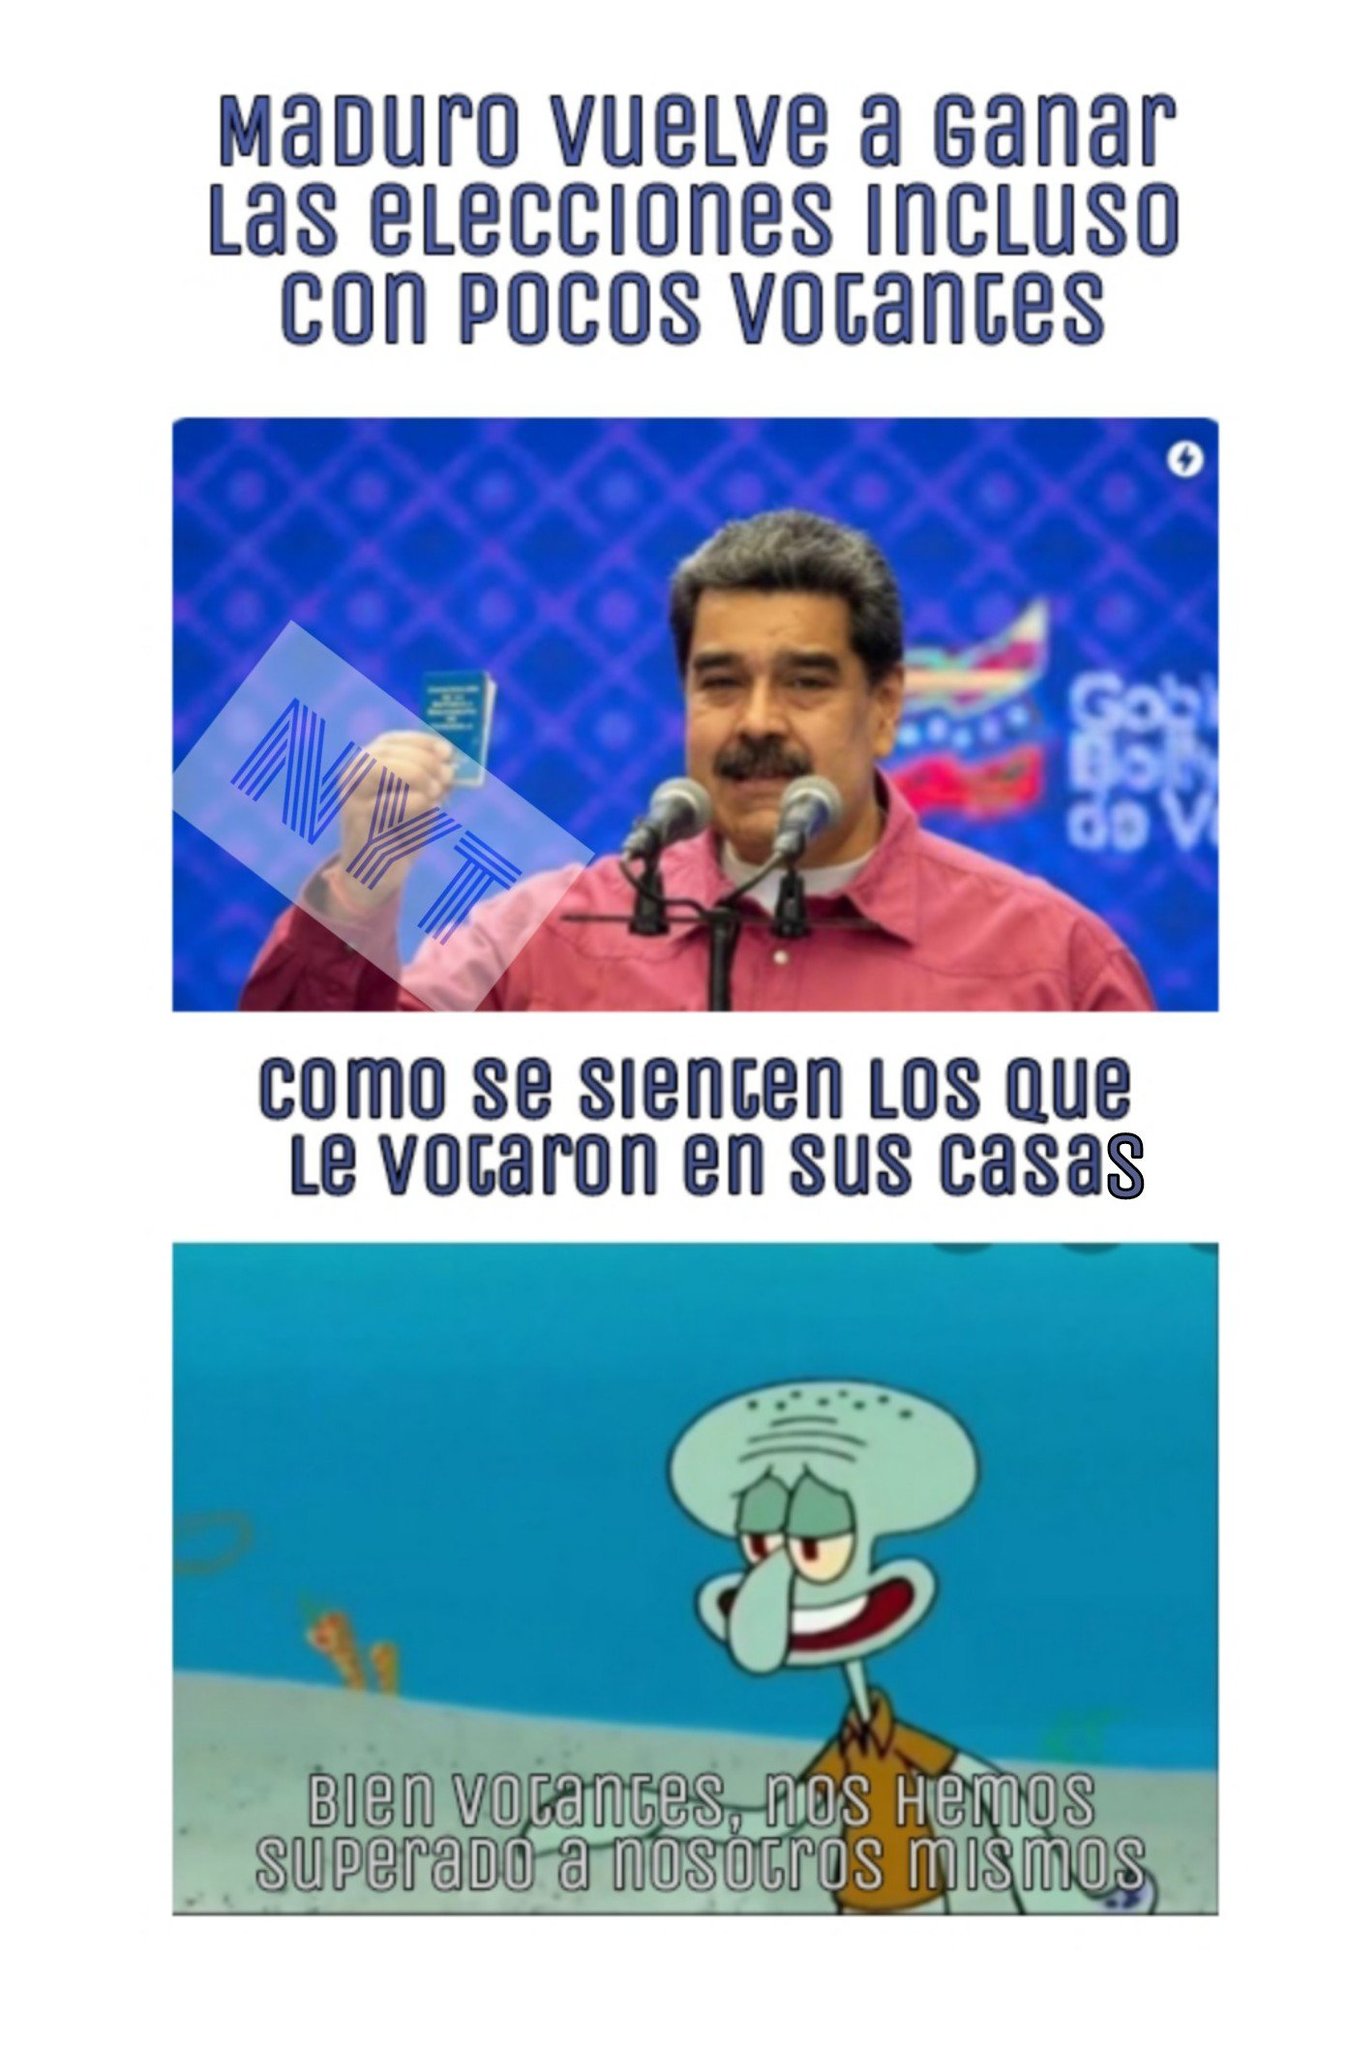 Vamos Maduro, "nada de corrupción" - meme